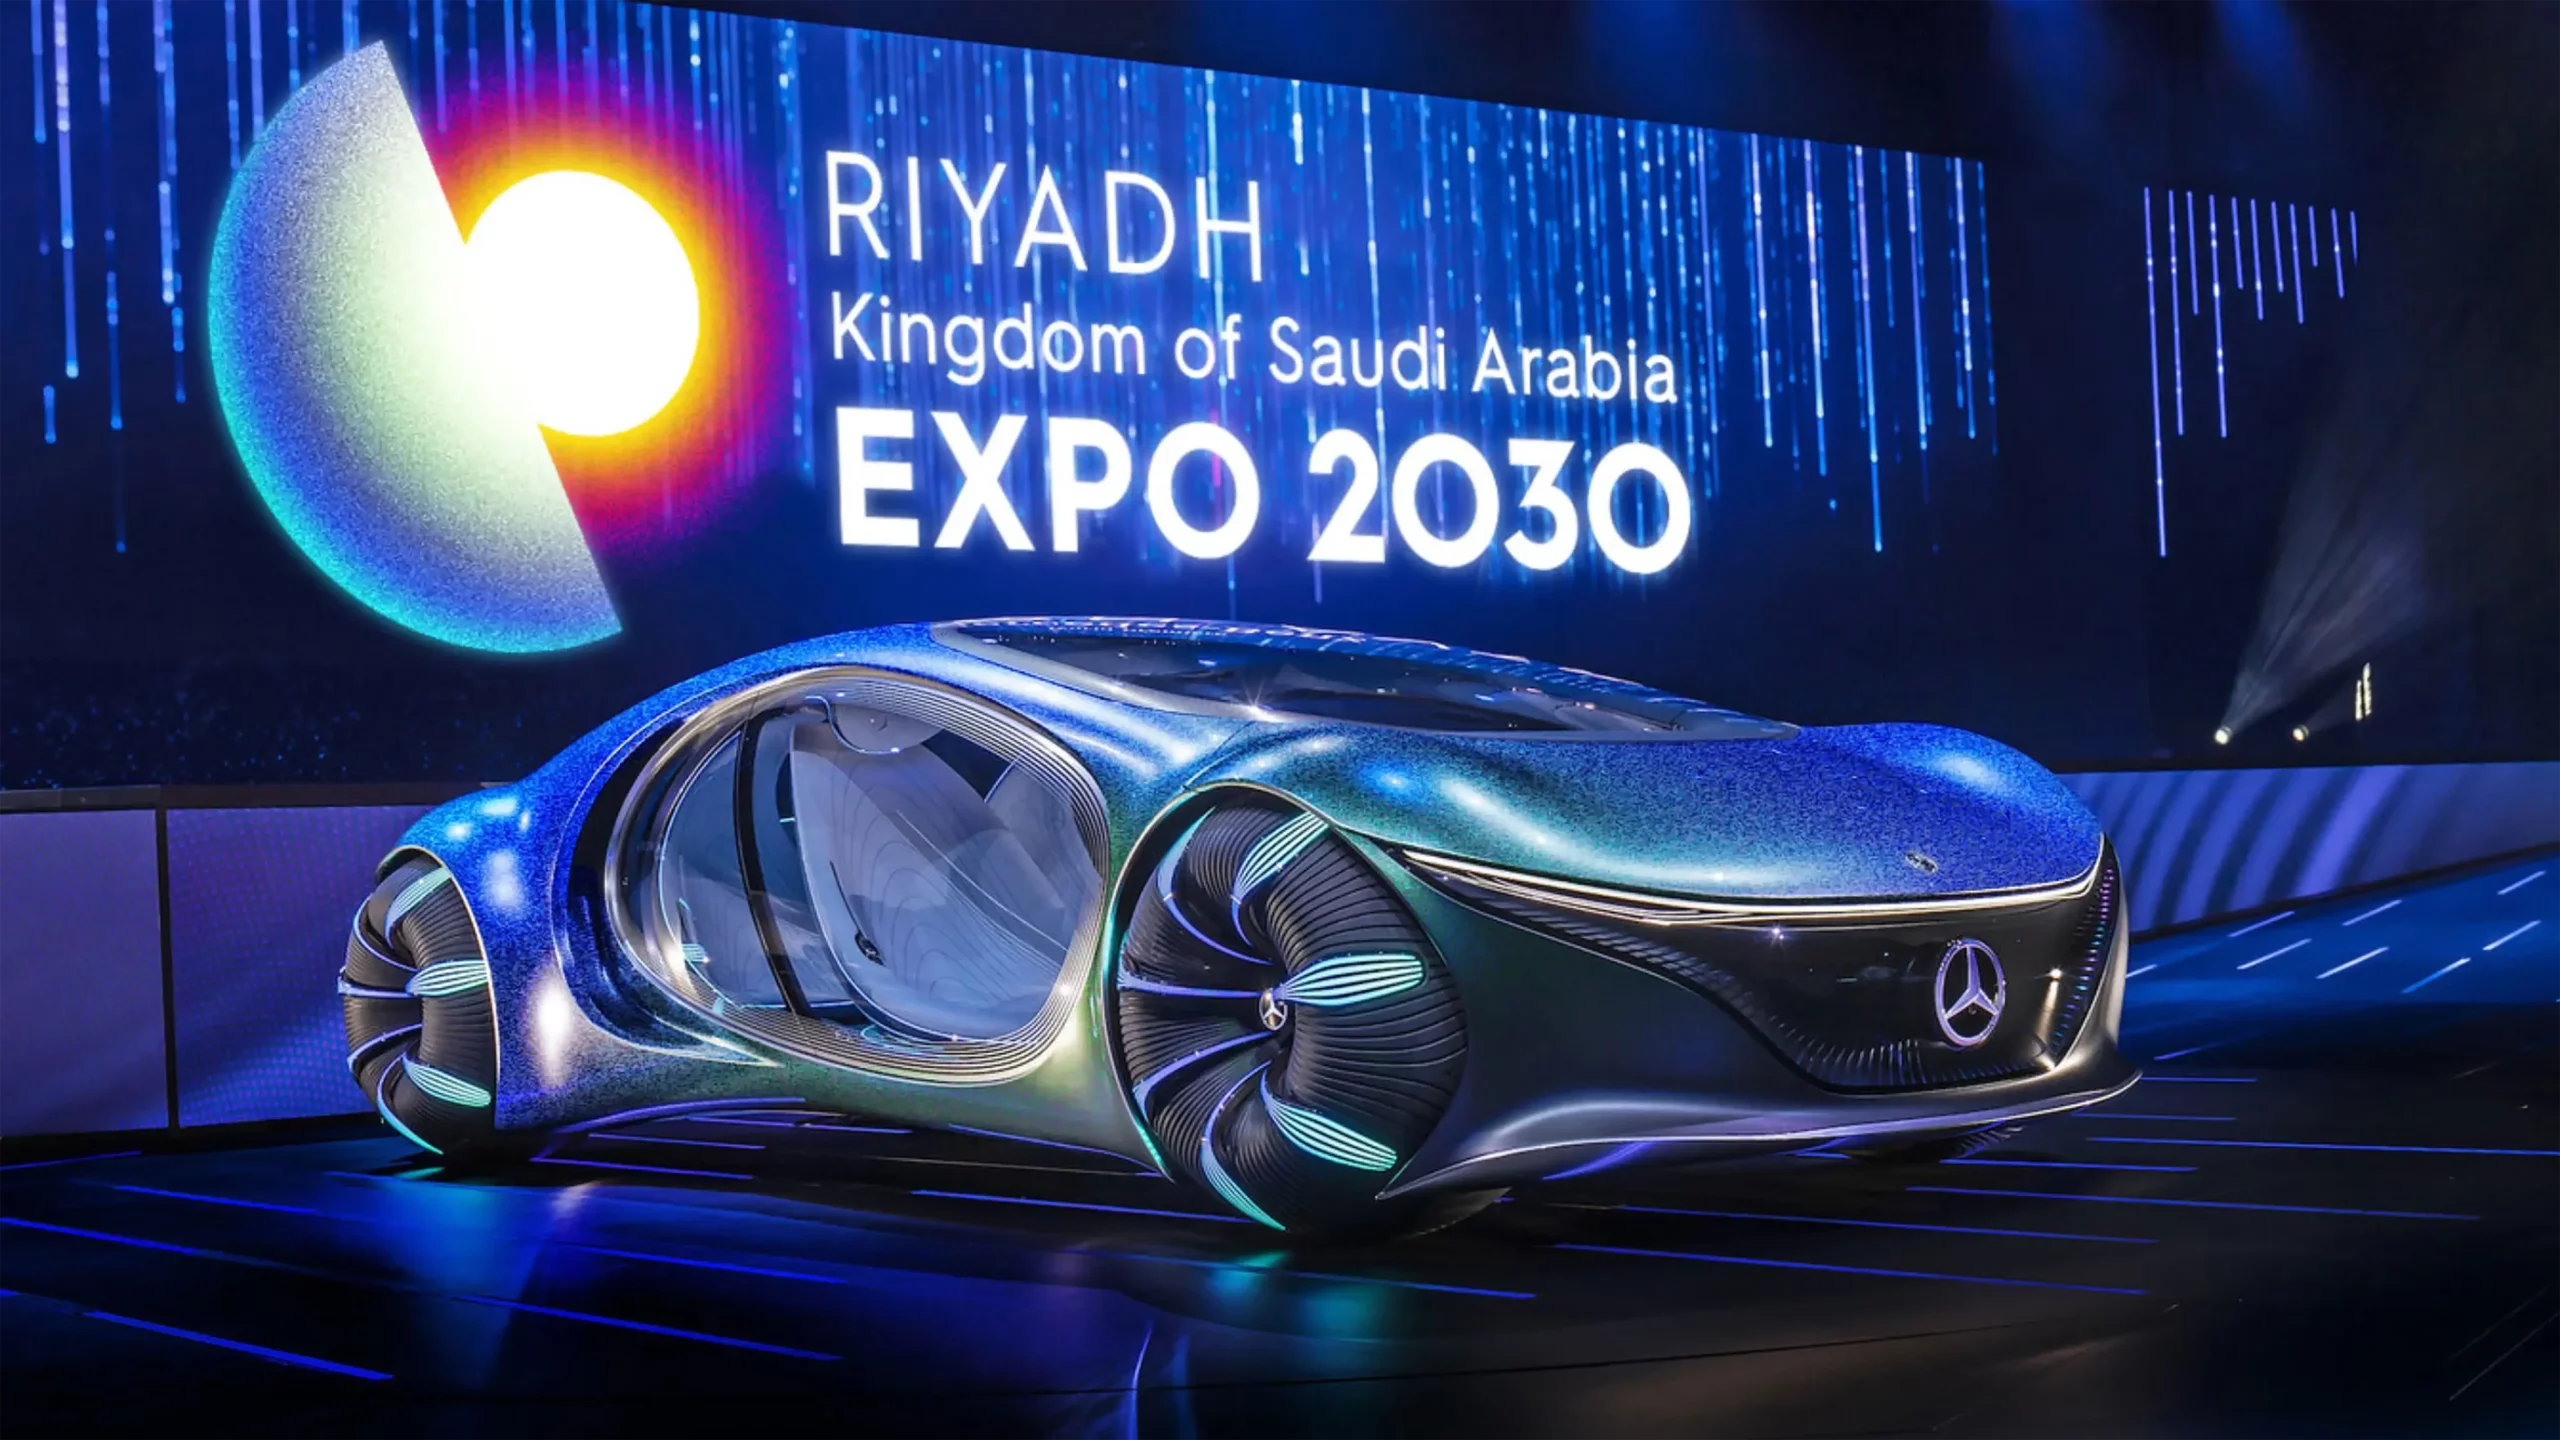 luxurybrands-digital studio riyadh2030 identity logo boundless car